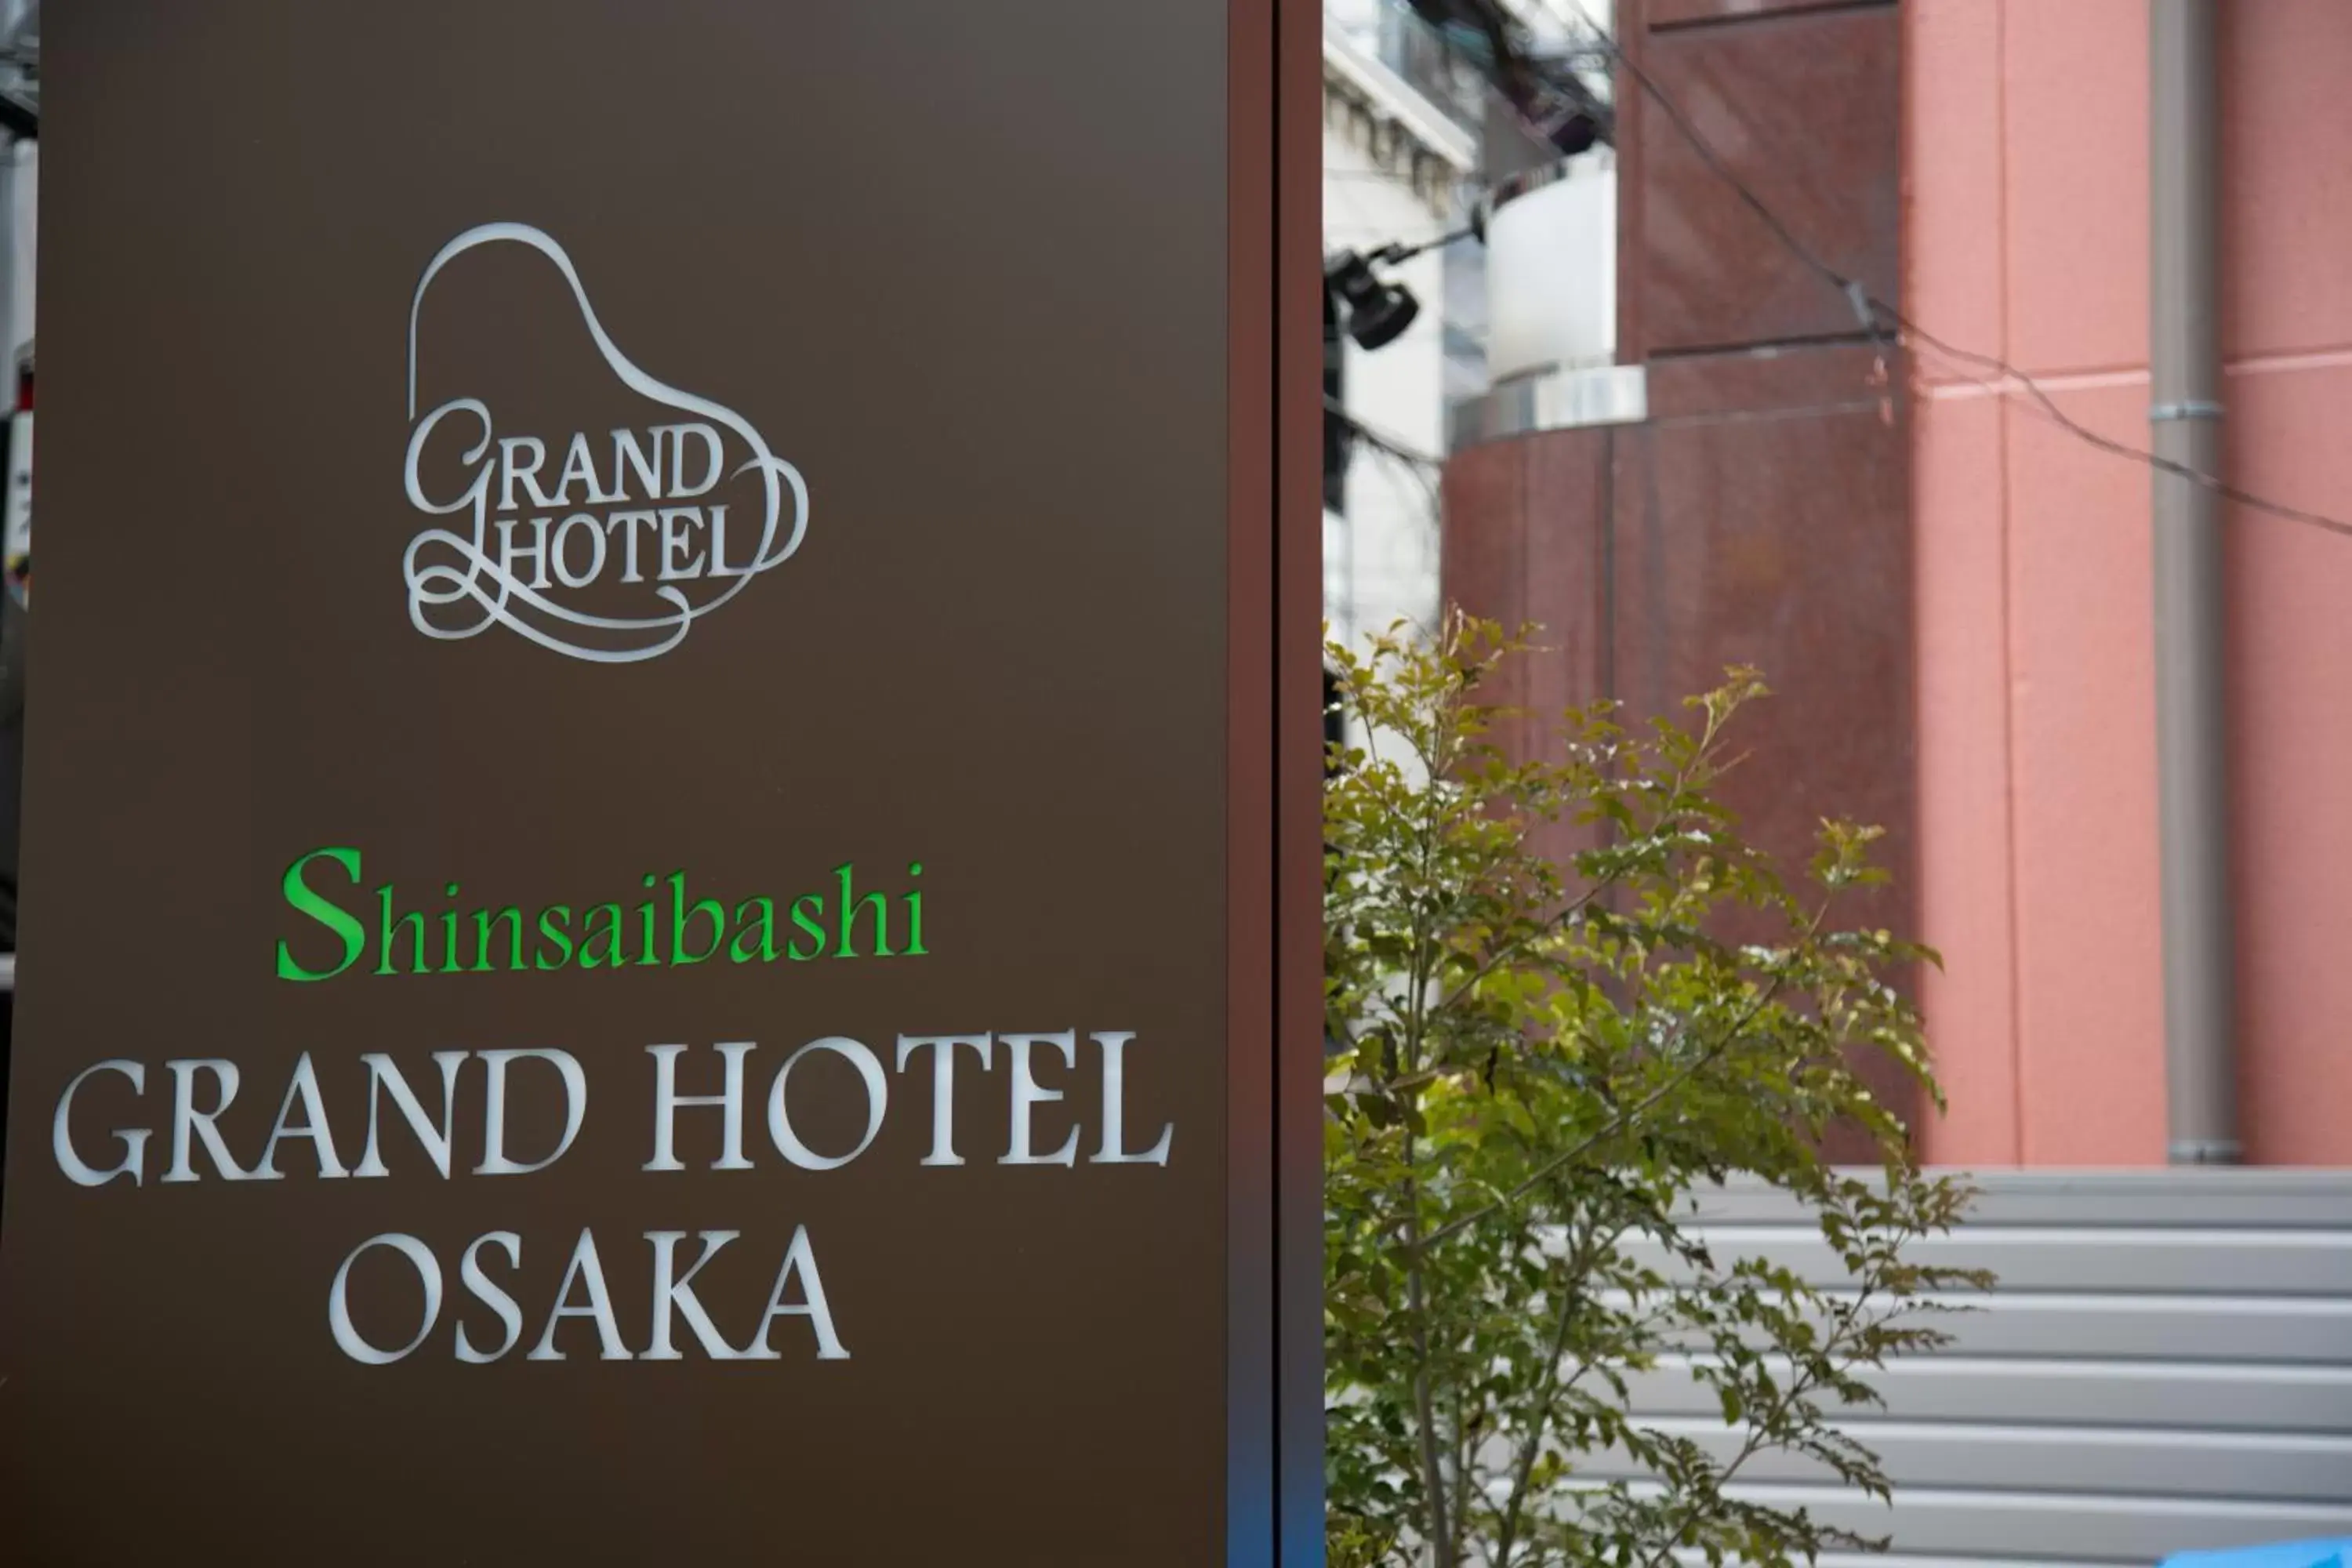 Facade/entrance in Shinsaibashi Grand Hotel Osaka